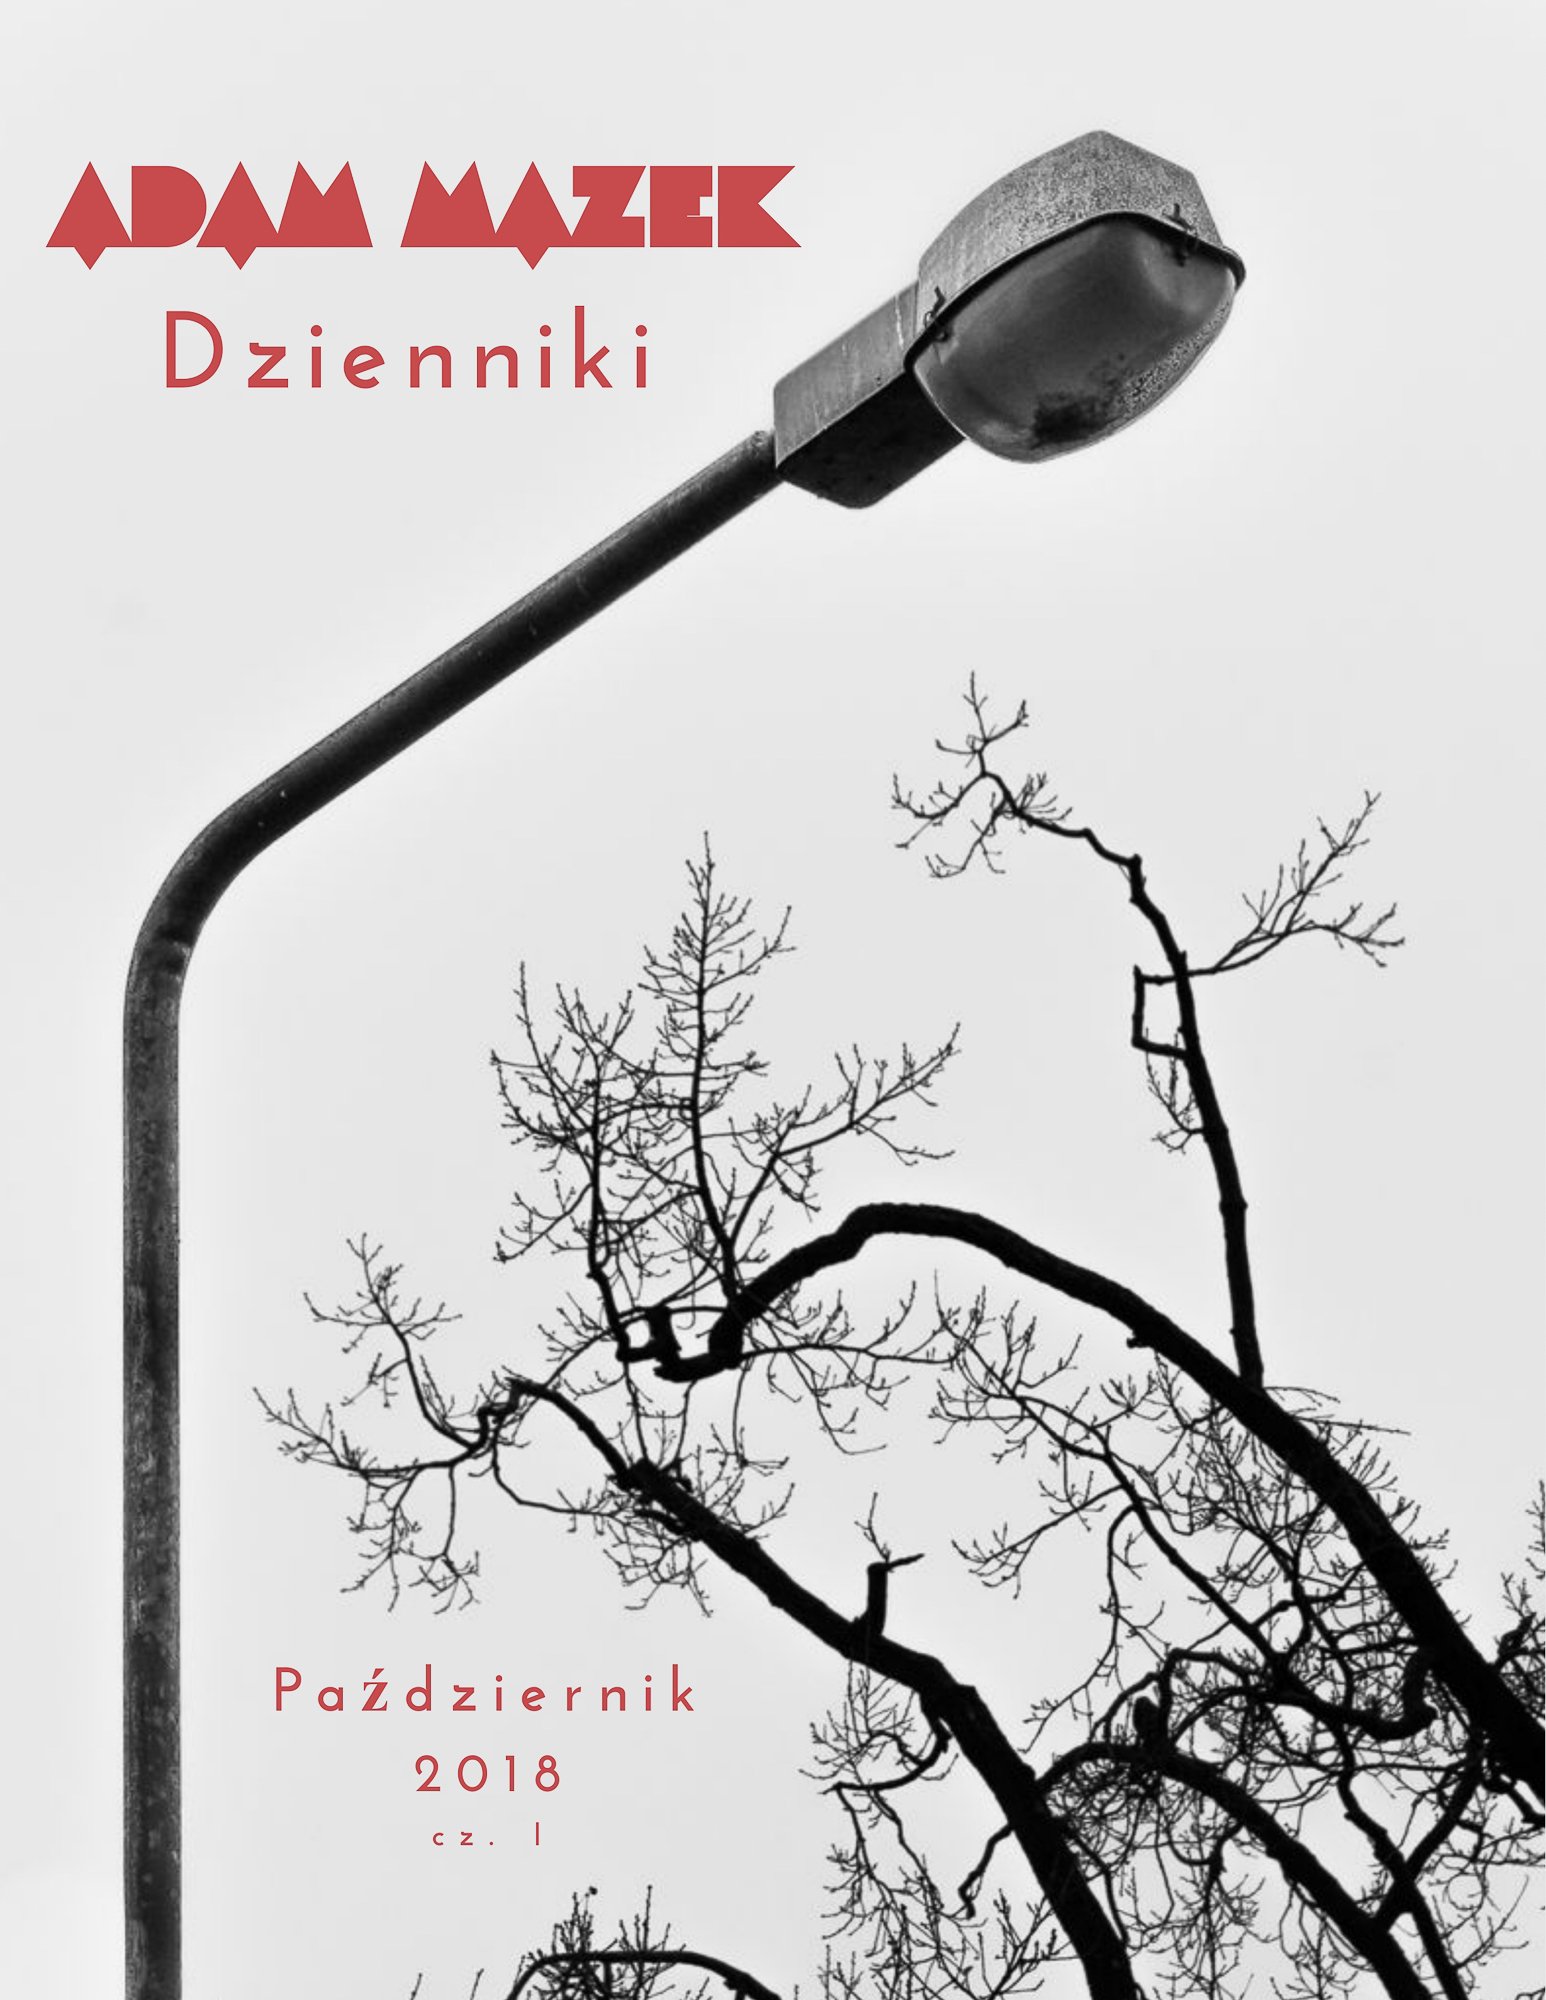 Adam Mazek Photography 2021. Post: "Dzienniki 10.2018 cz.I" E-book. Cover of the Polish edition. Okładka polskiej edycji. Featured image. Speak aloud.